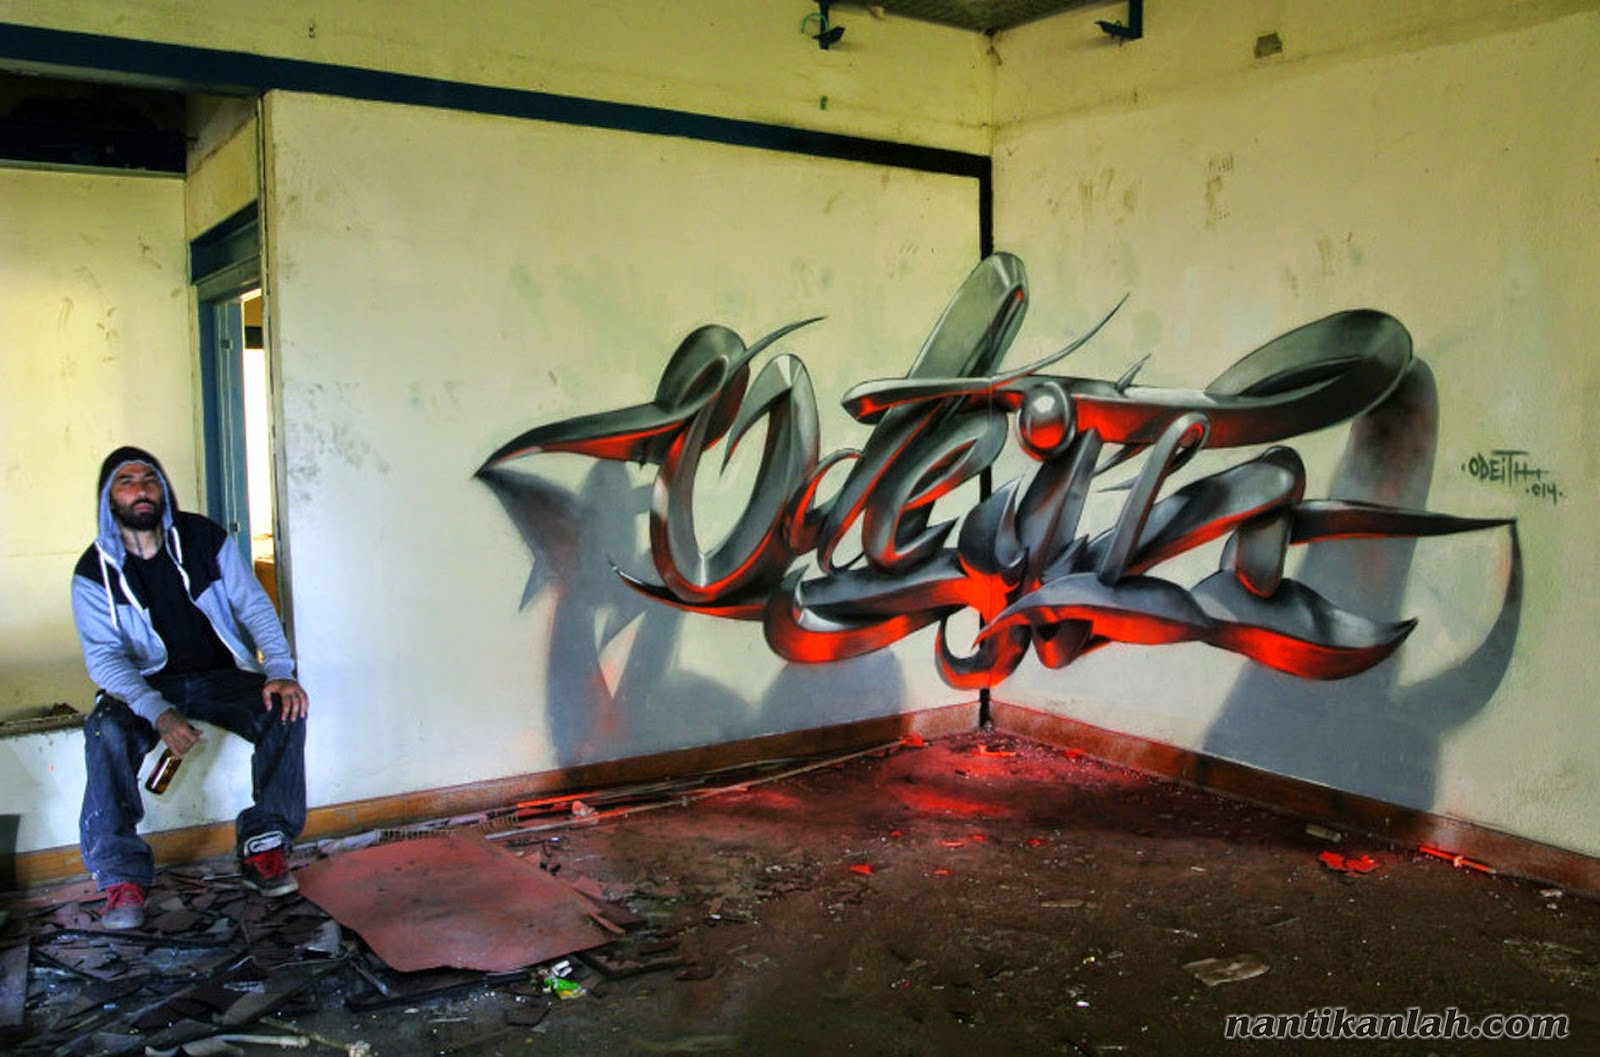 78gambar Graffit Terkeren Dan Popular Kumpulan Gambar Graffiti Keren